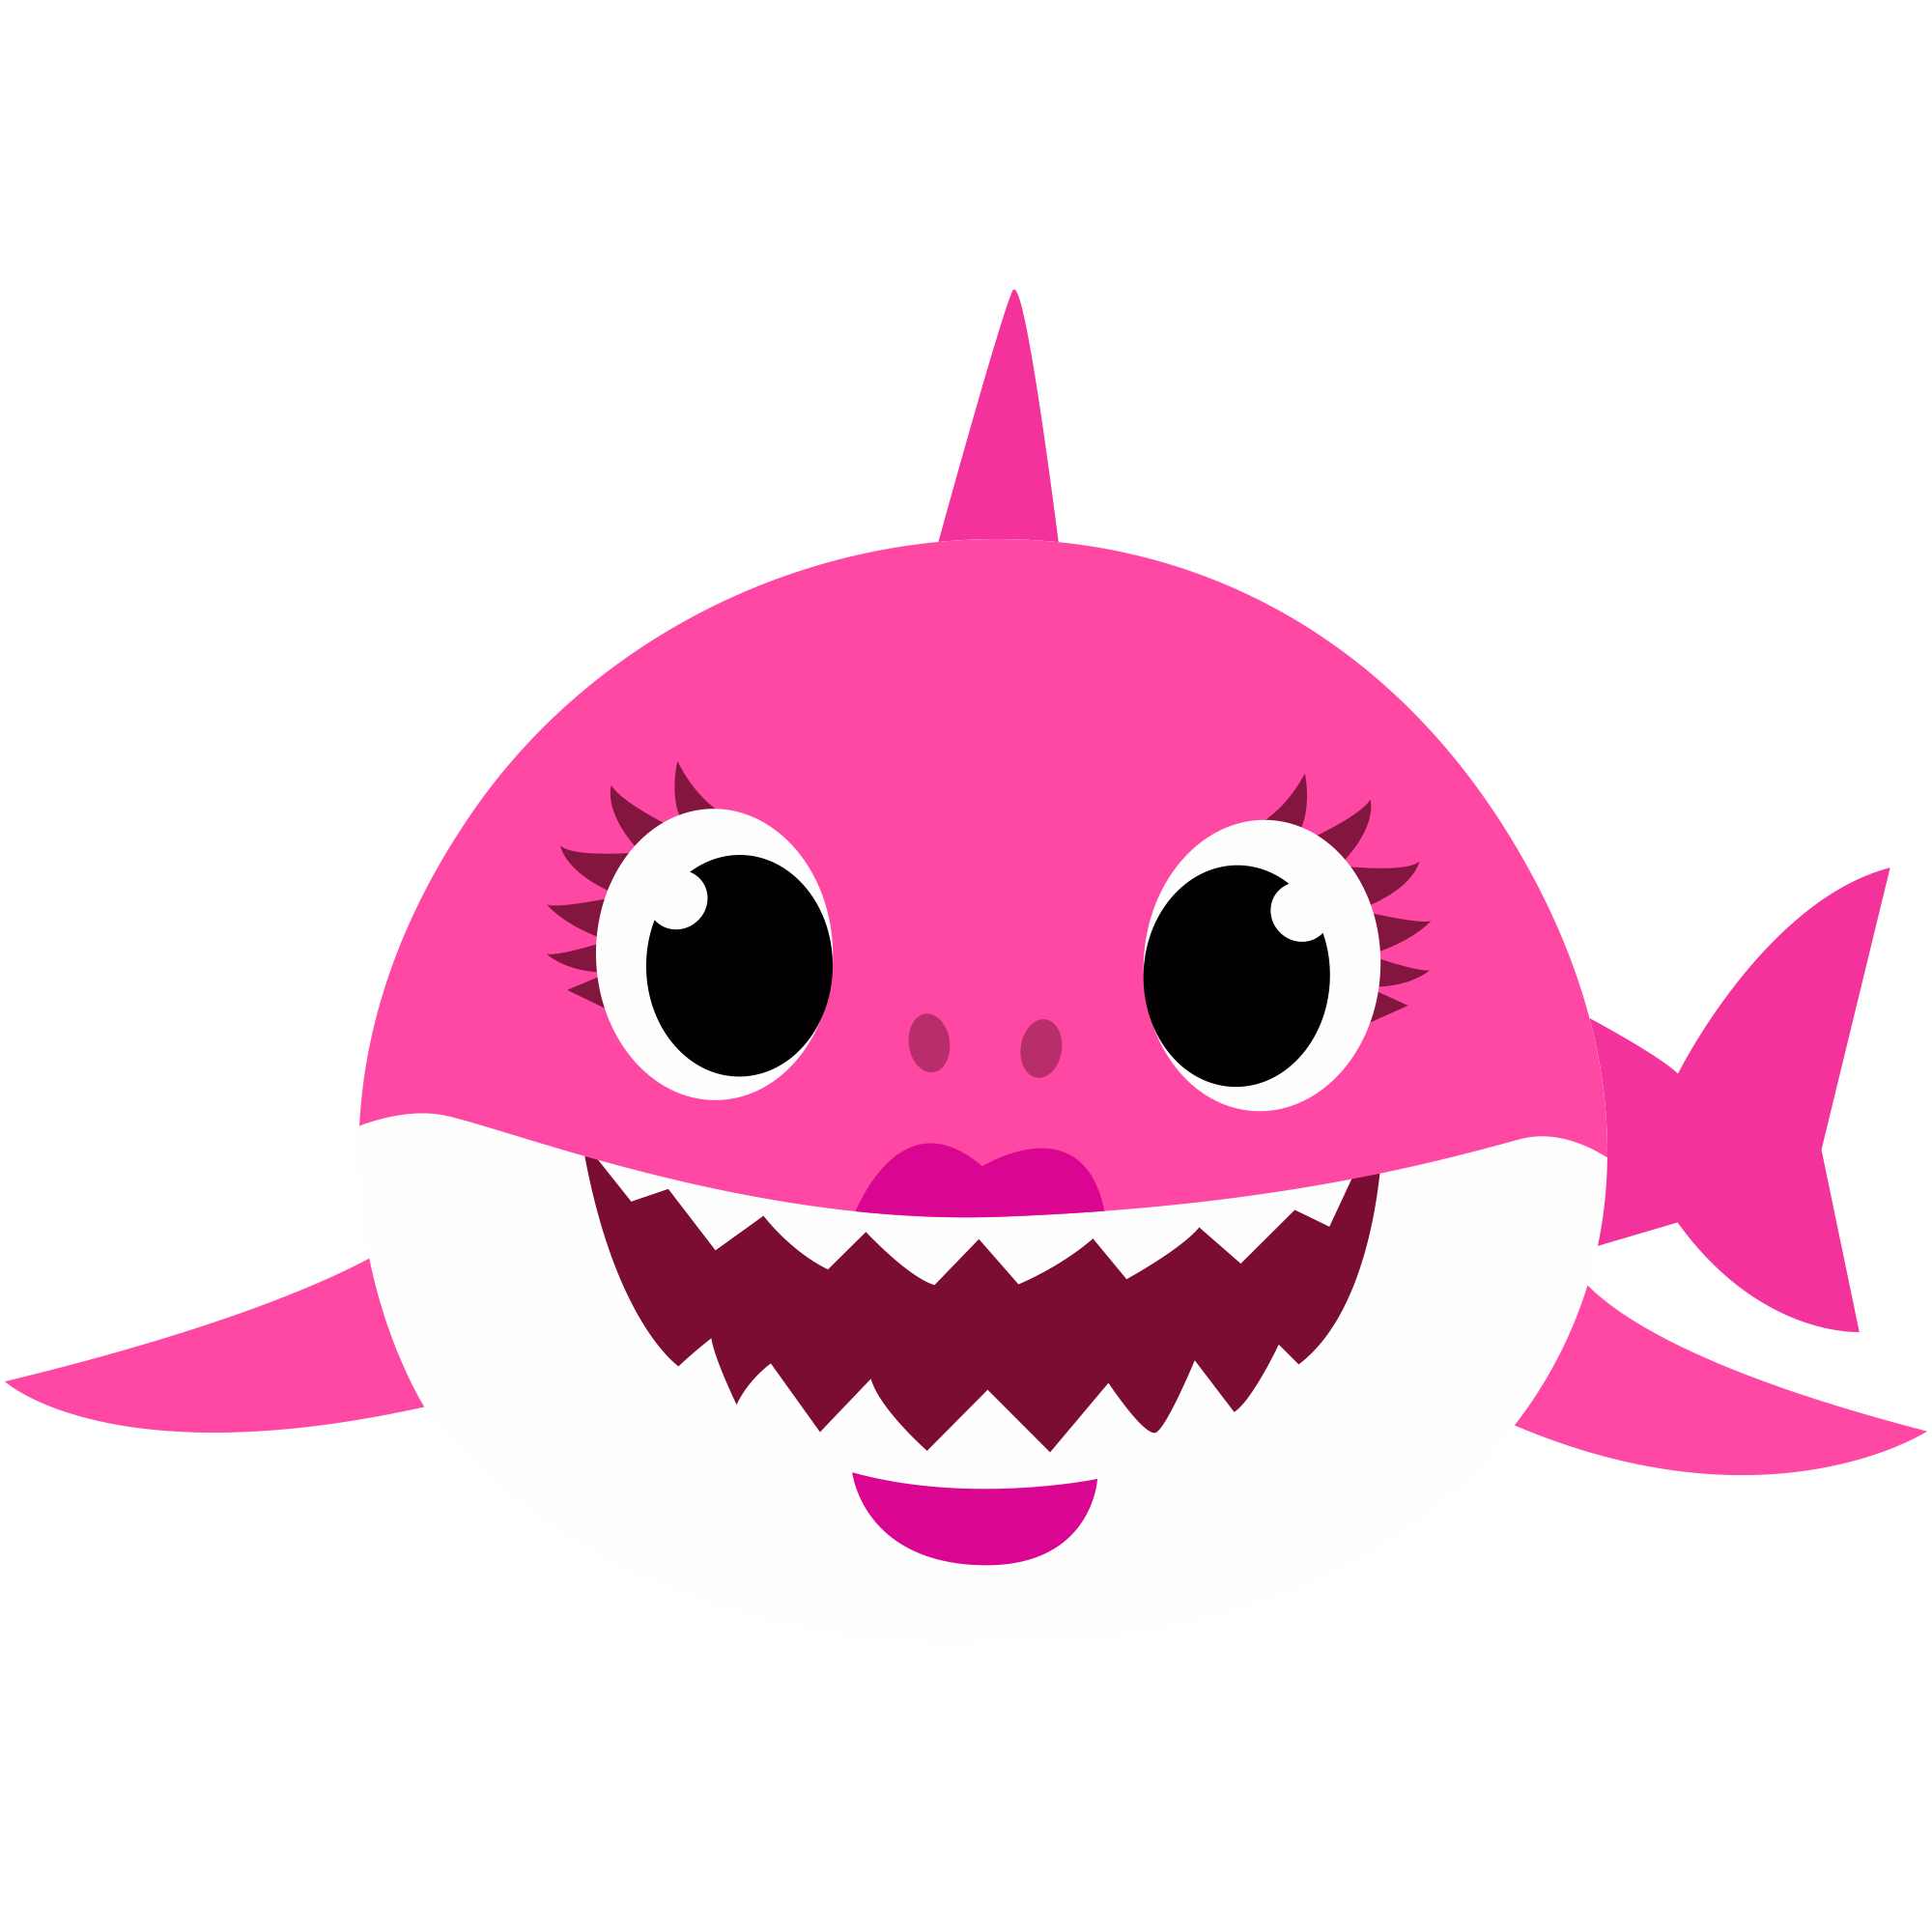 Pinkfong Clip Art Baby Shark Clipart